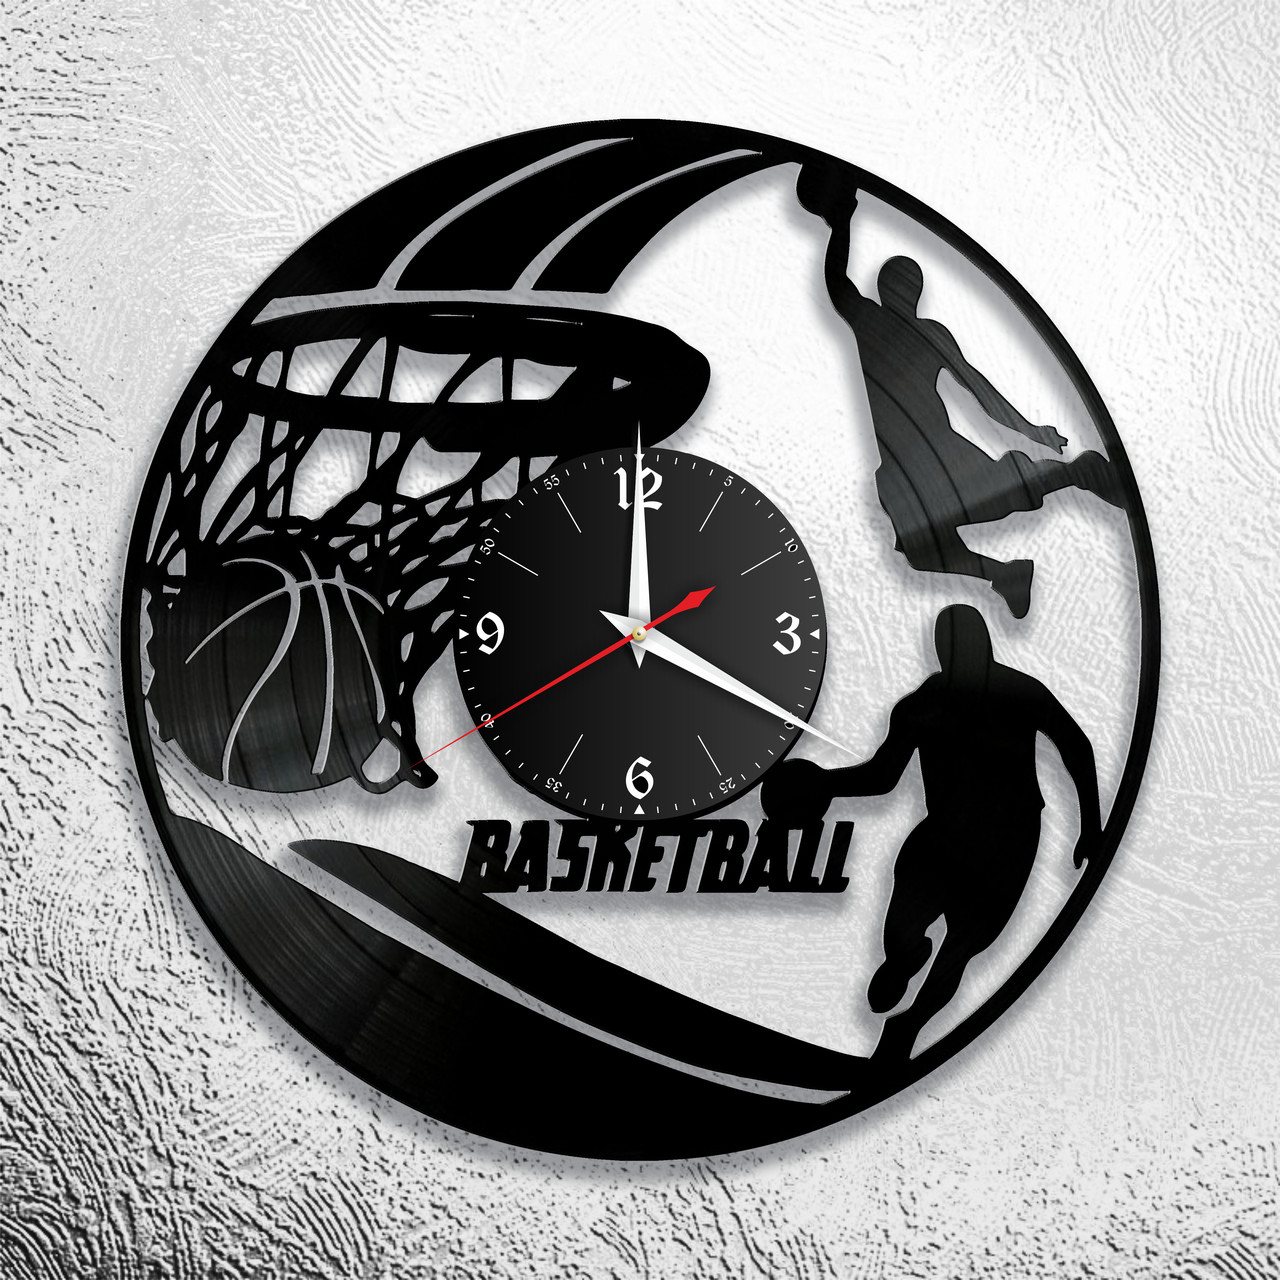 Оригинальные часы из виниловых пластинок  "Баскетбол" версия 2, фото 1